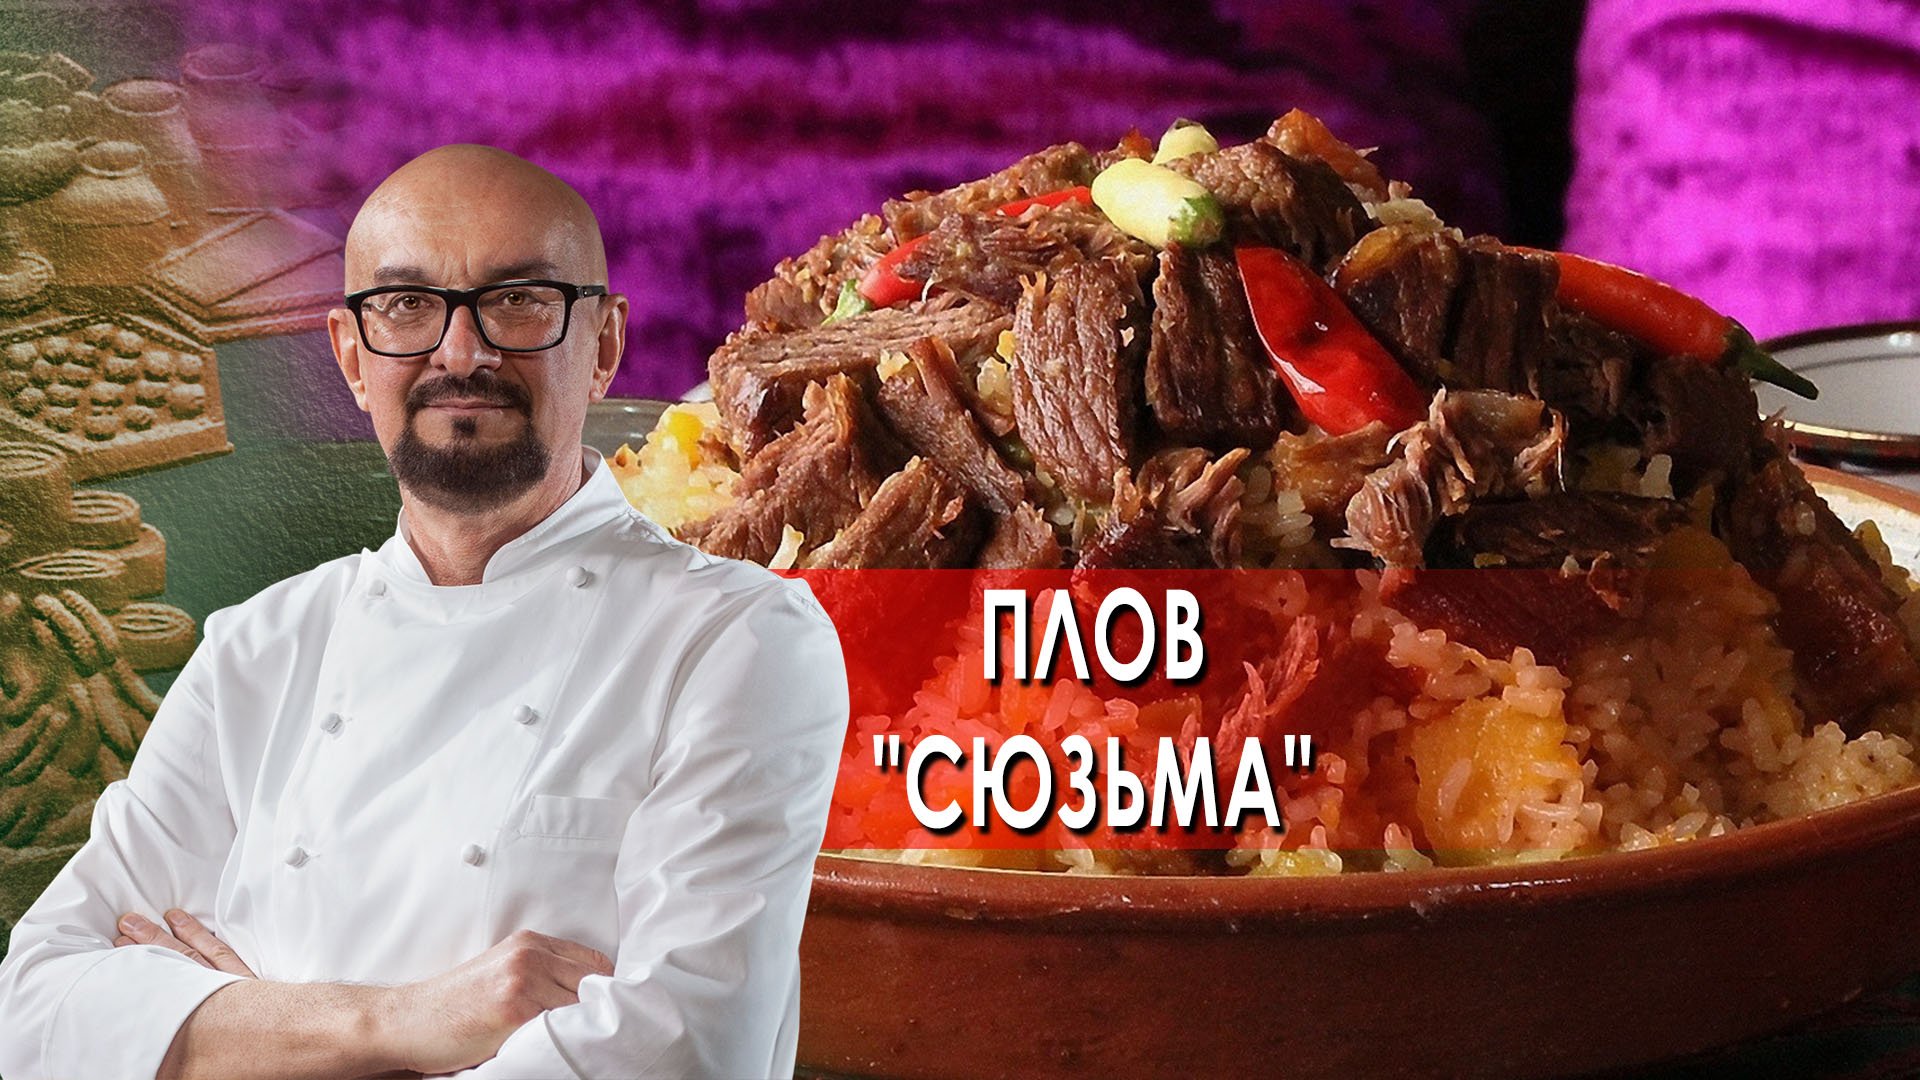 Сталик Ханкишиев: о вкусной и здоровой пище. Плов "Союзьма" (2022)